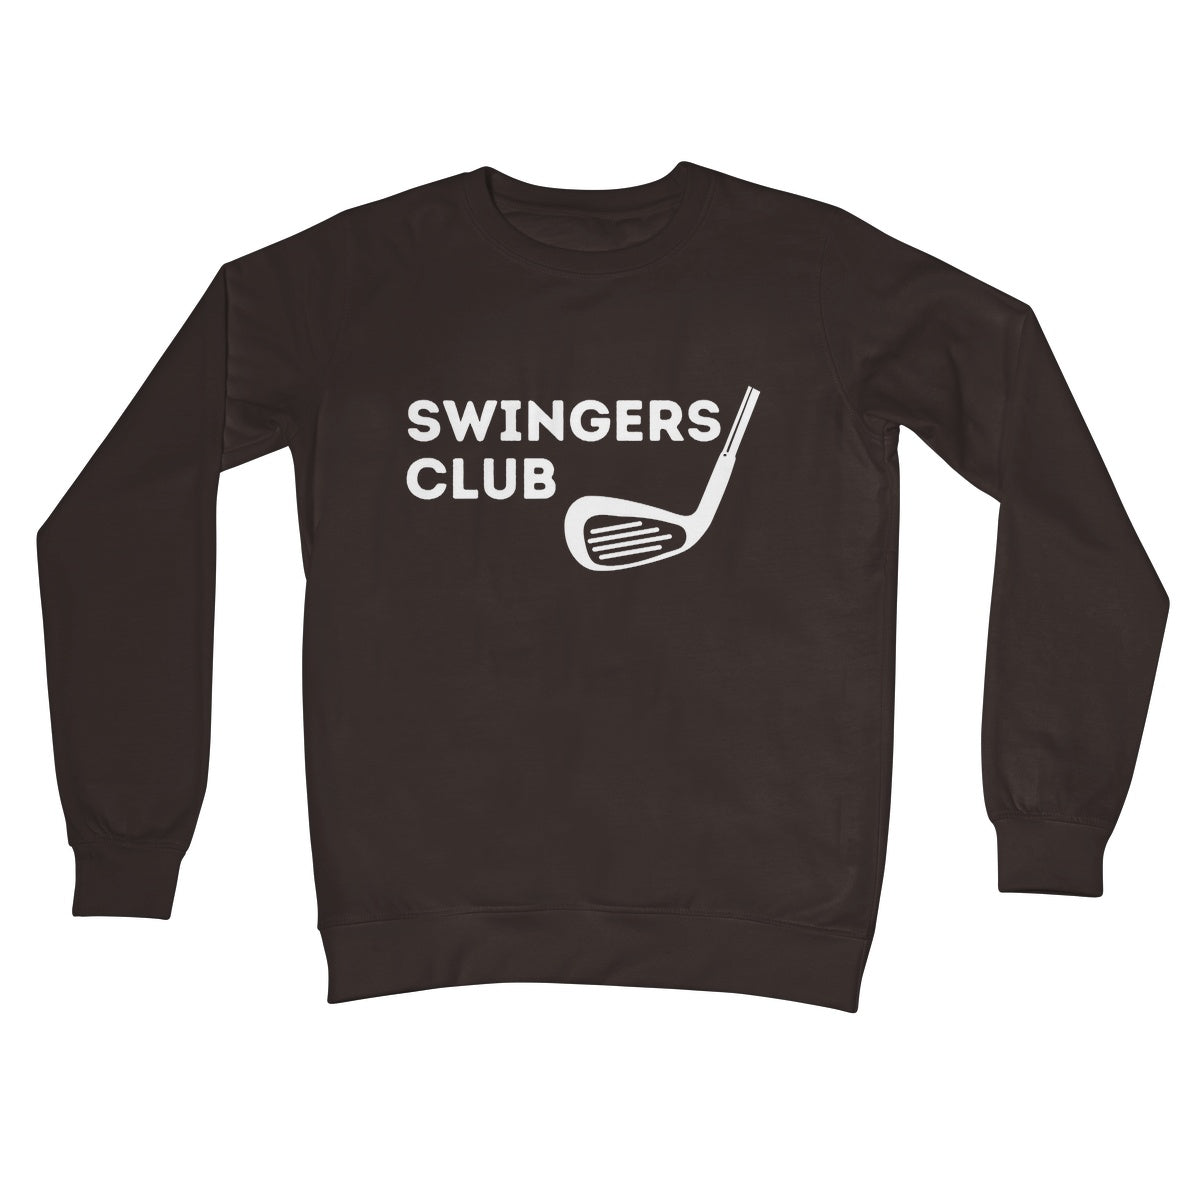 swingers club jumper brown